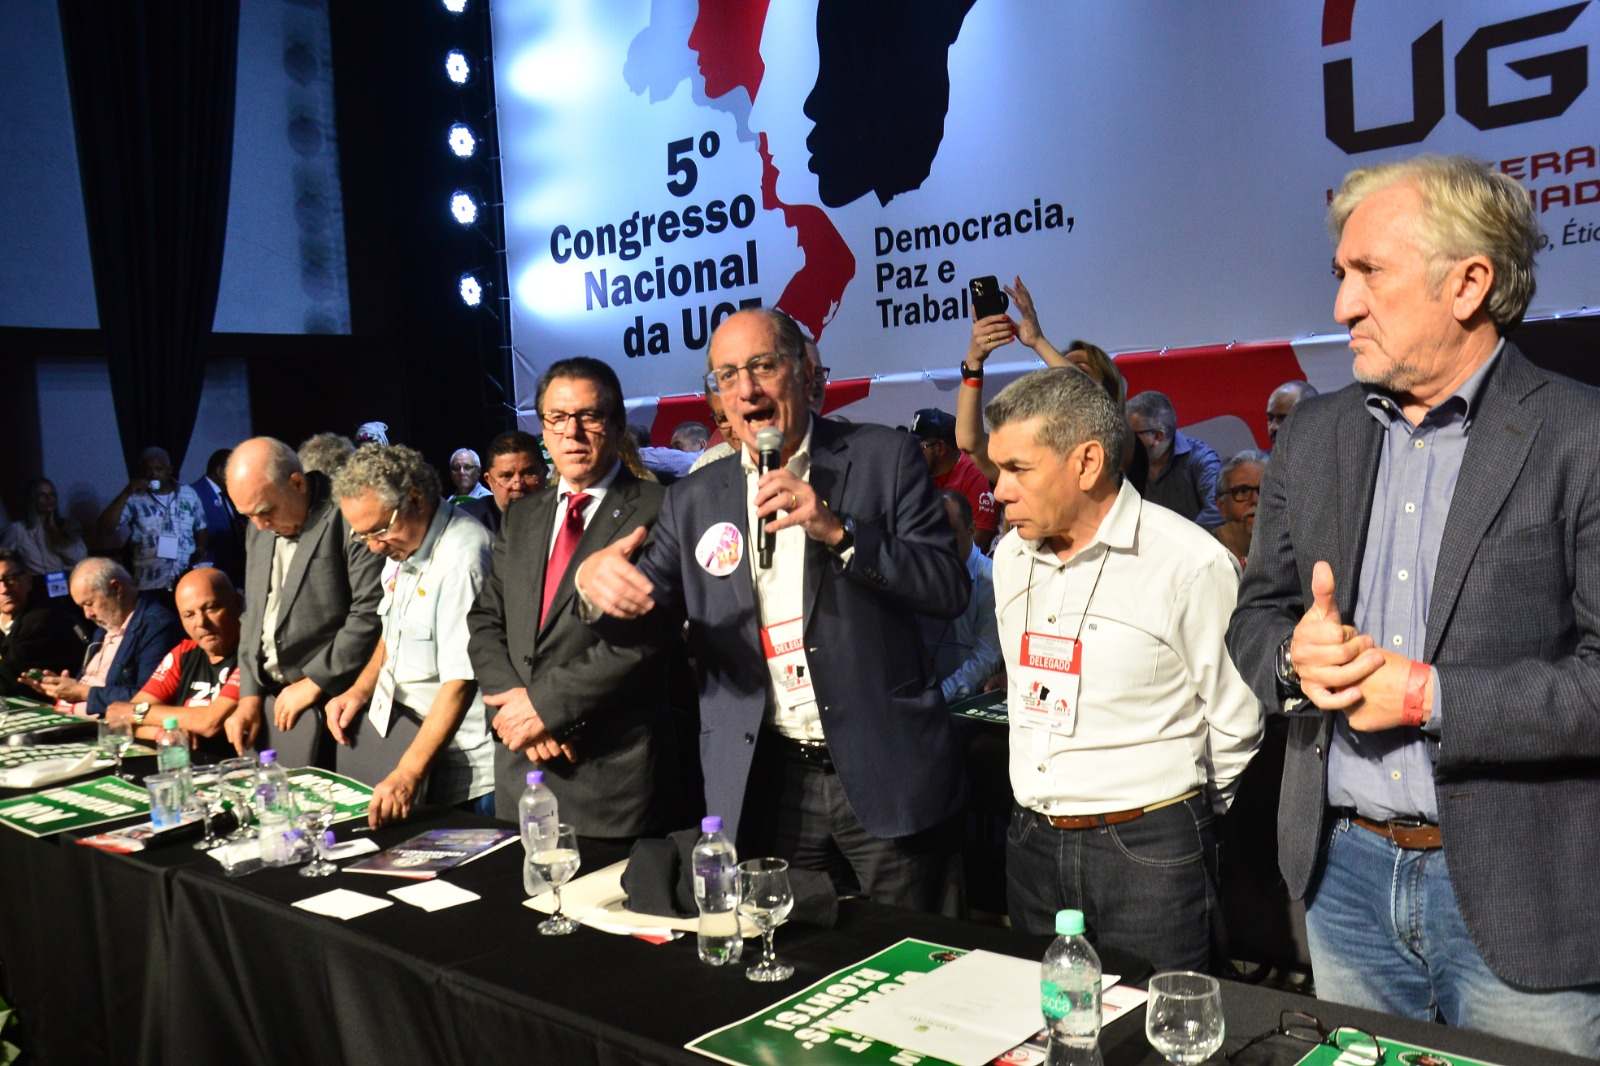 UGT Nacional abre seu 5º Congresso nacional